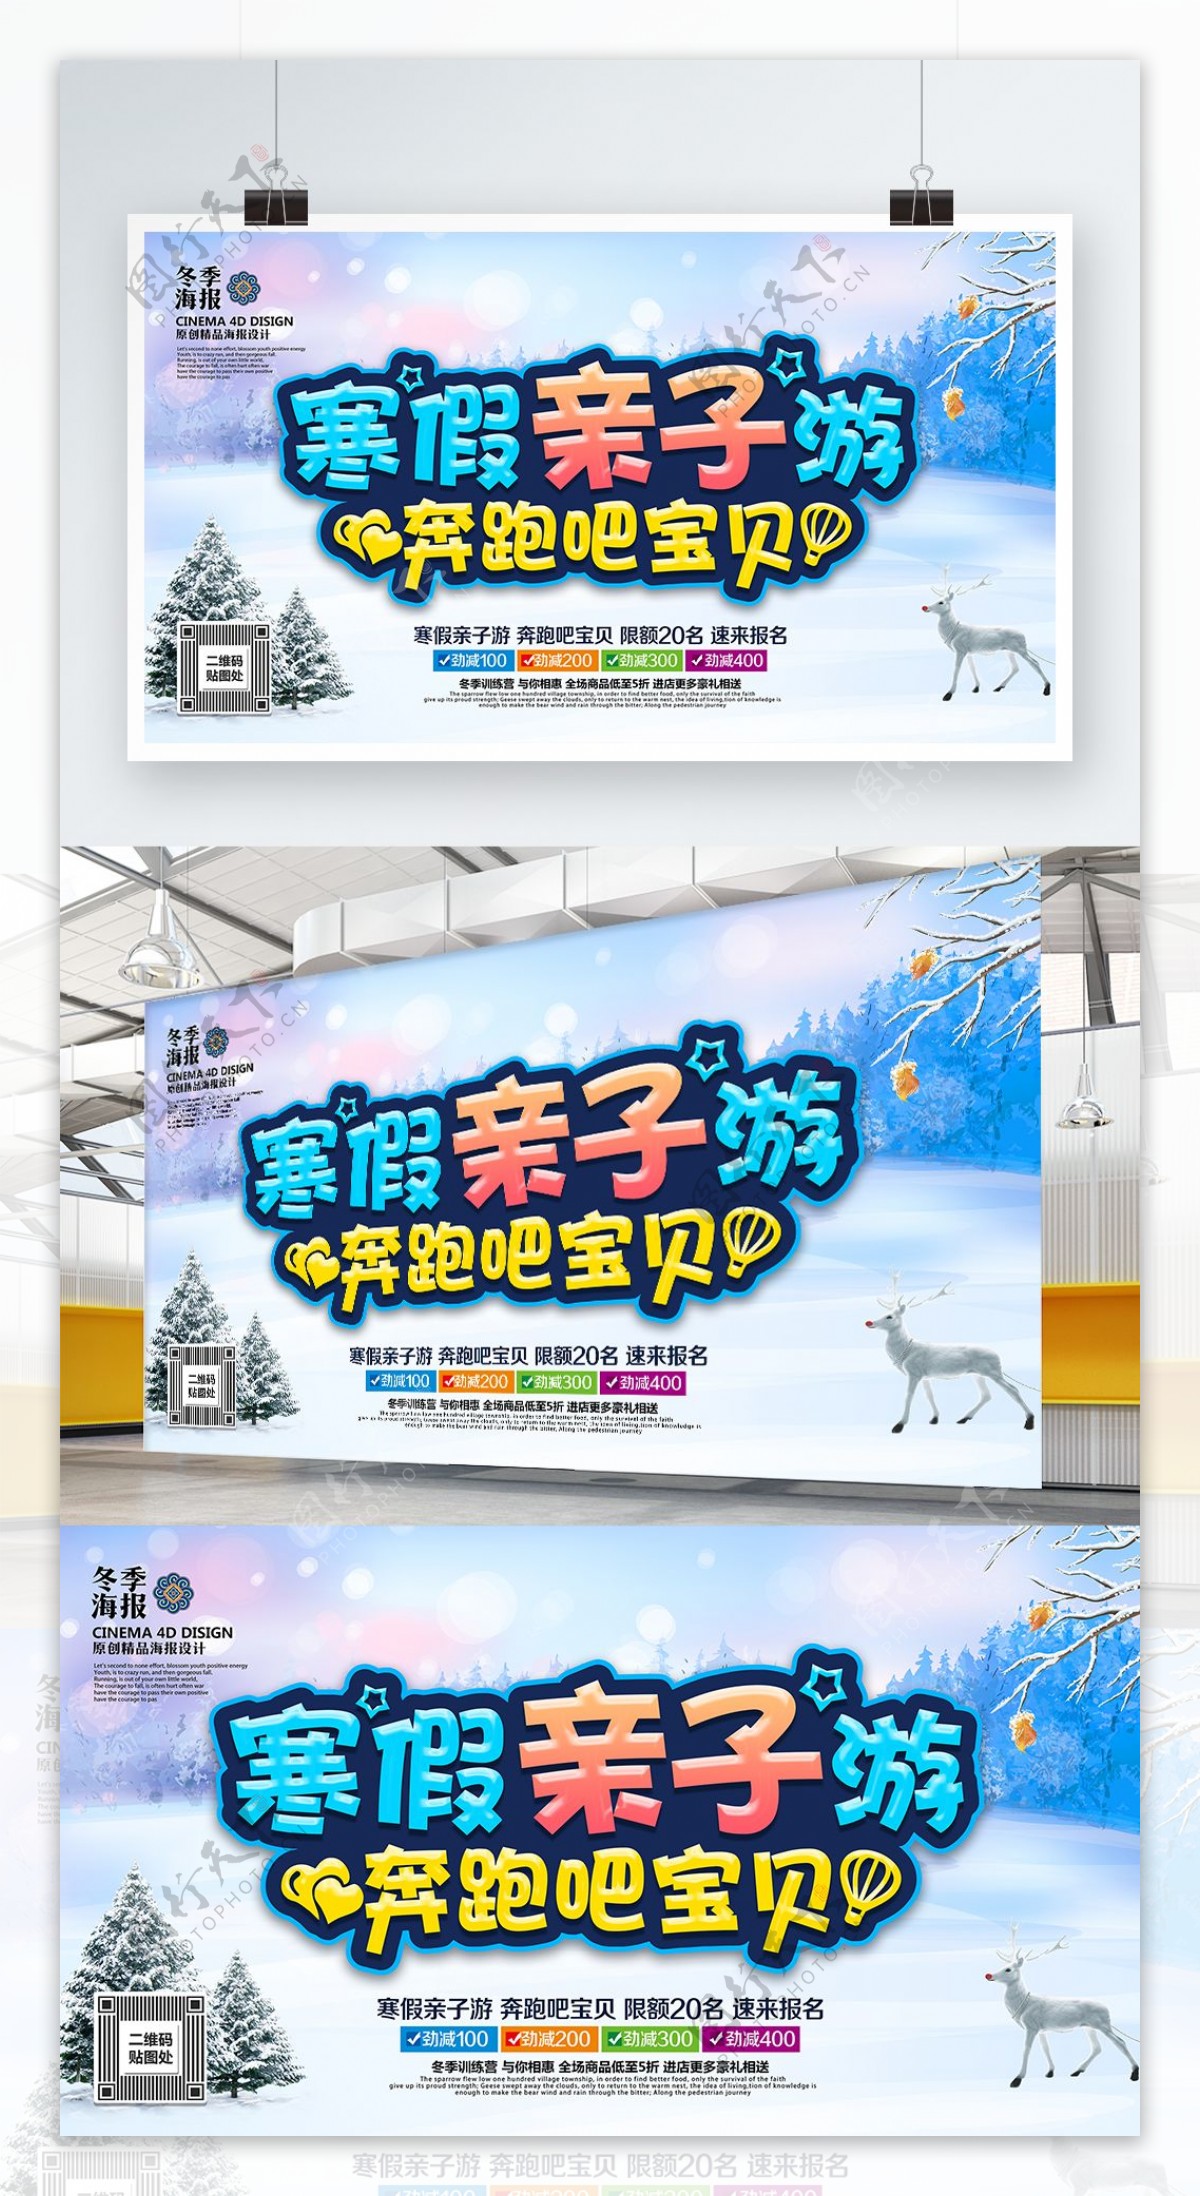 创意炫彩寒假亲子游寒假旅游宣传海报PSD